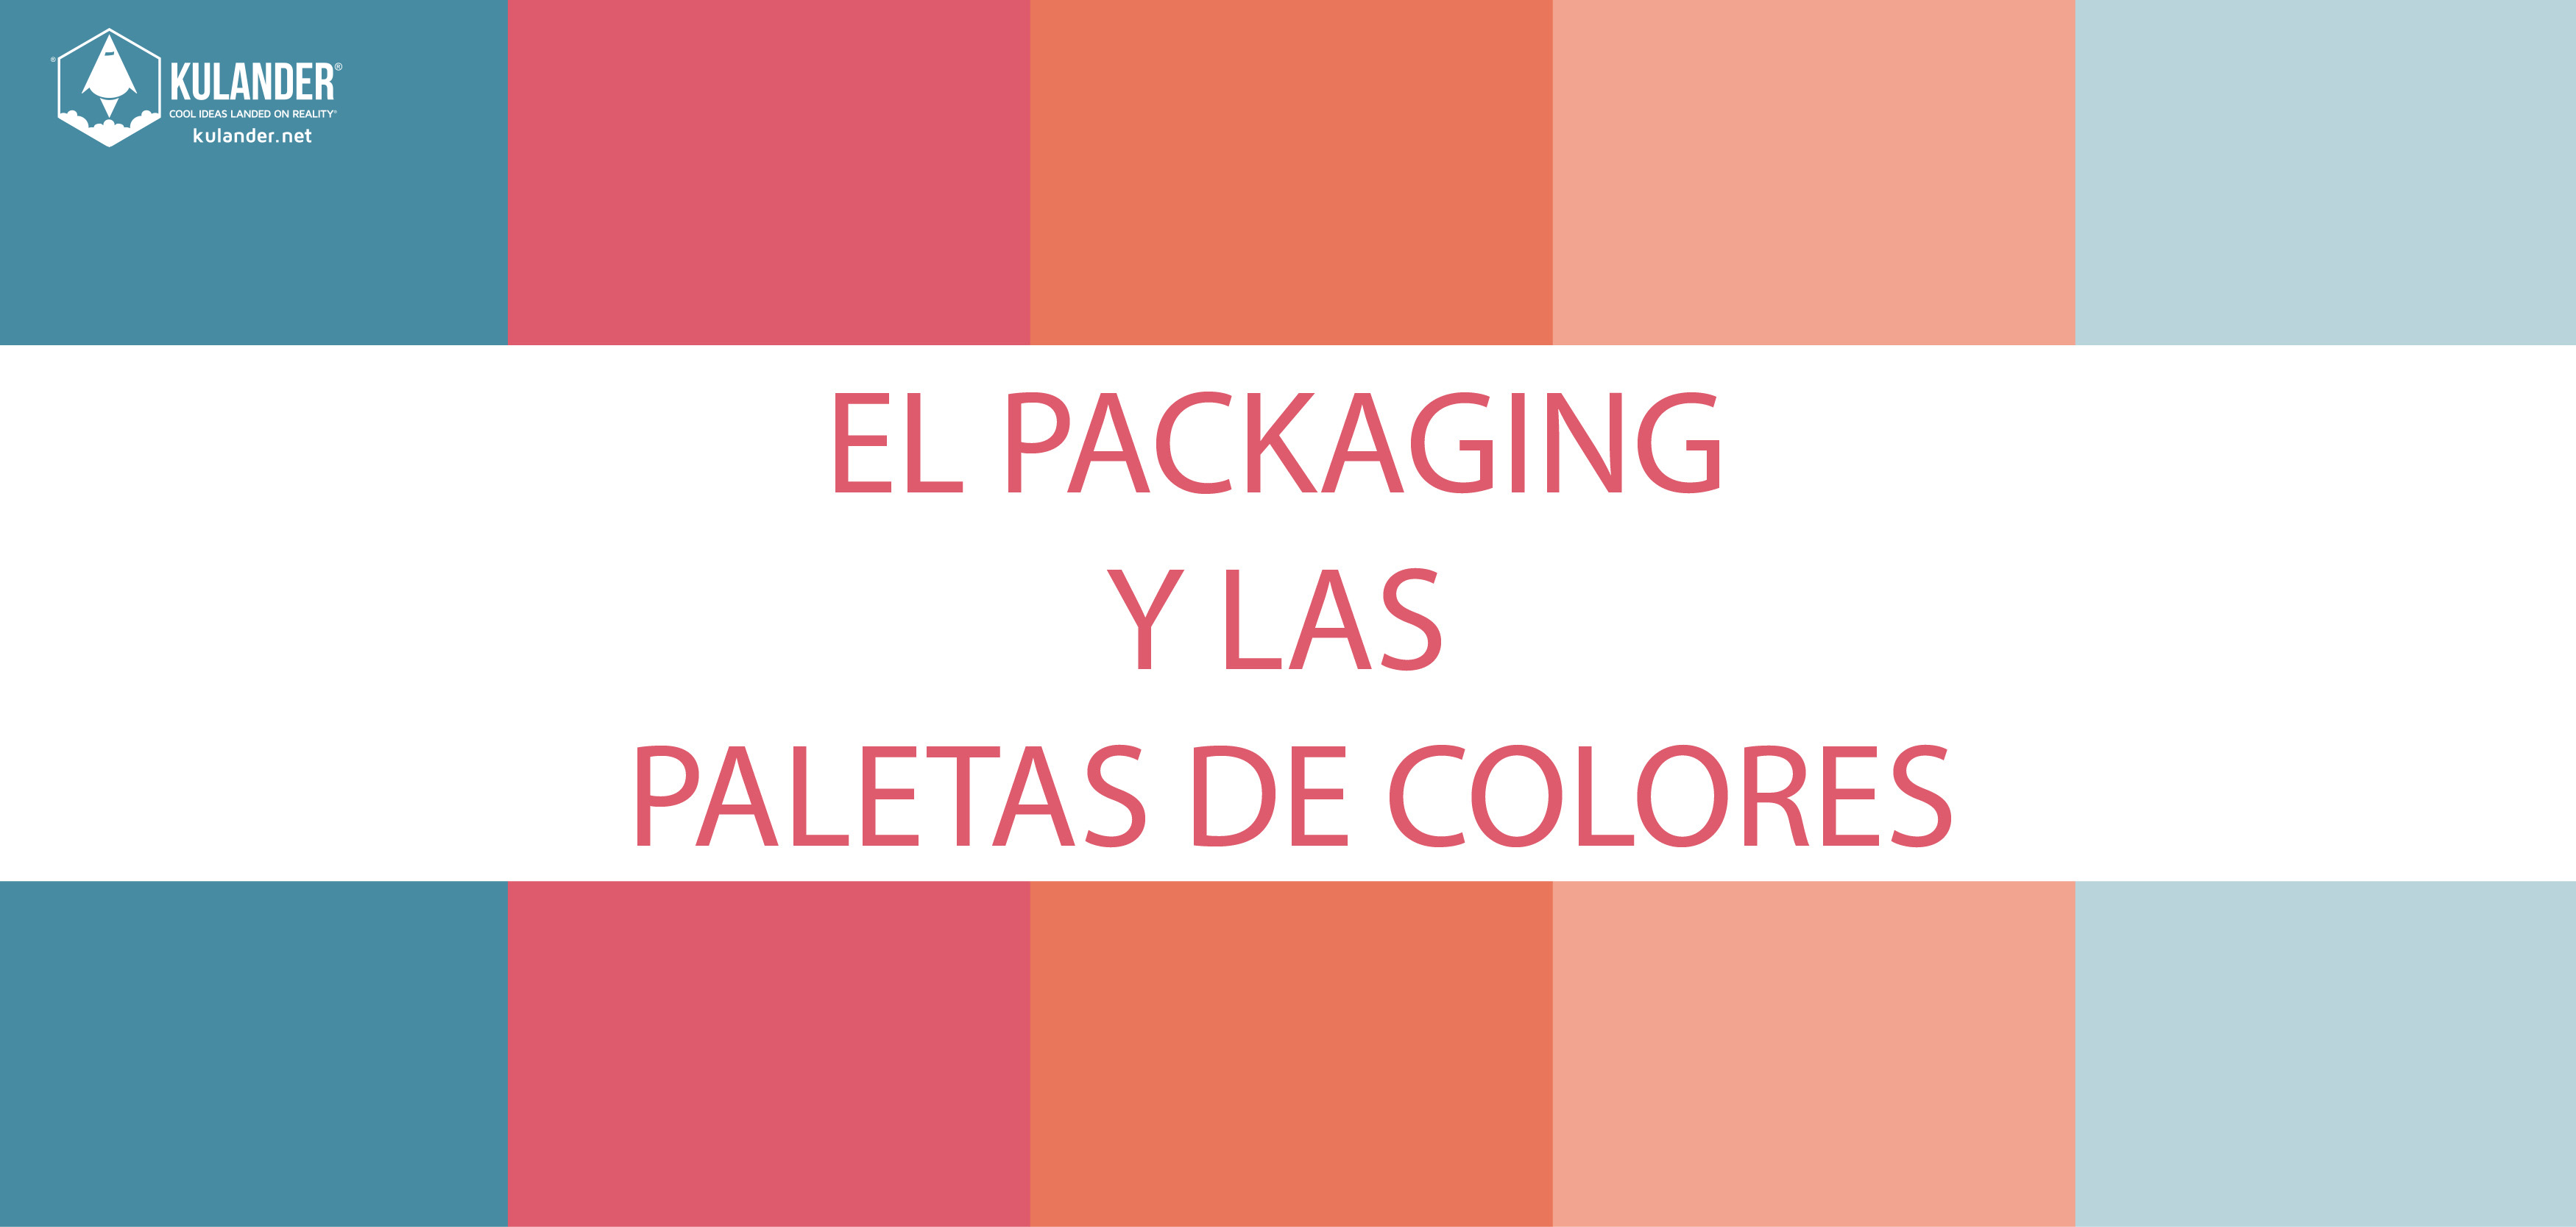 El Packaging y las paletas de colores